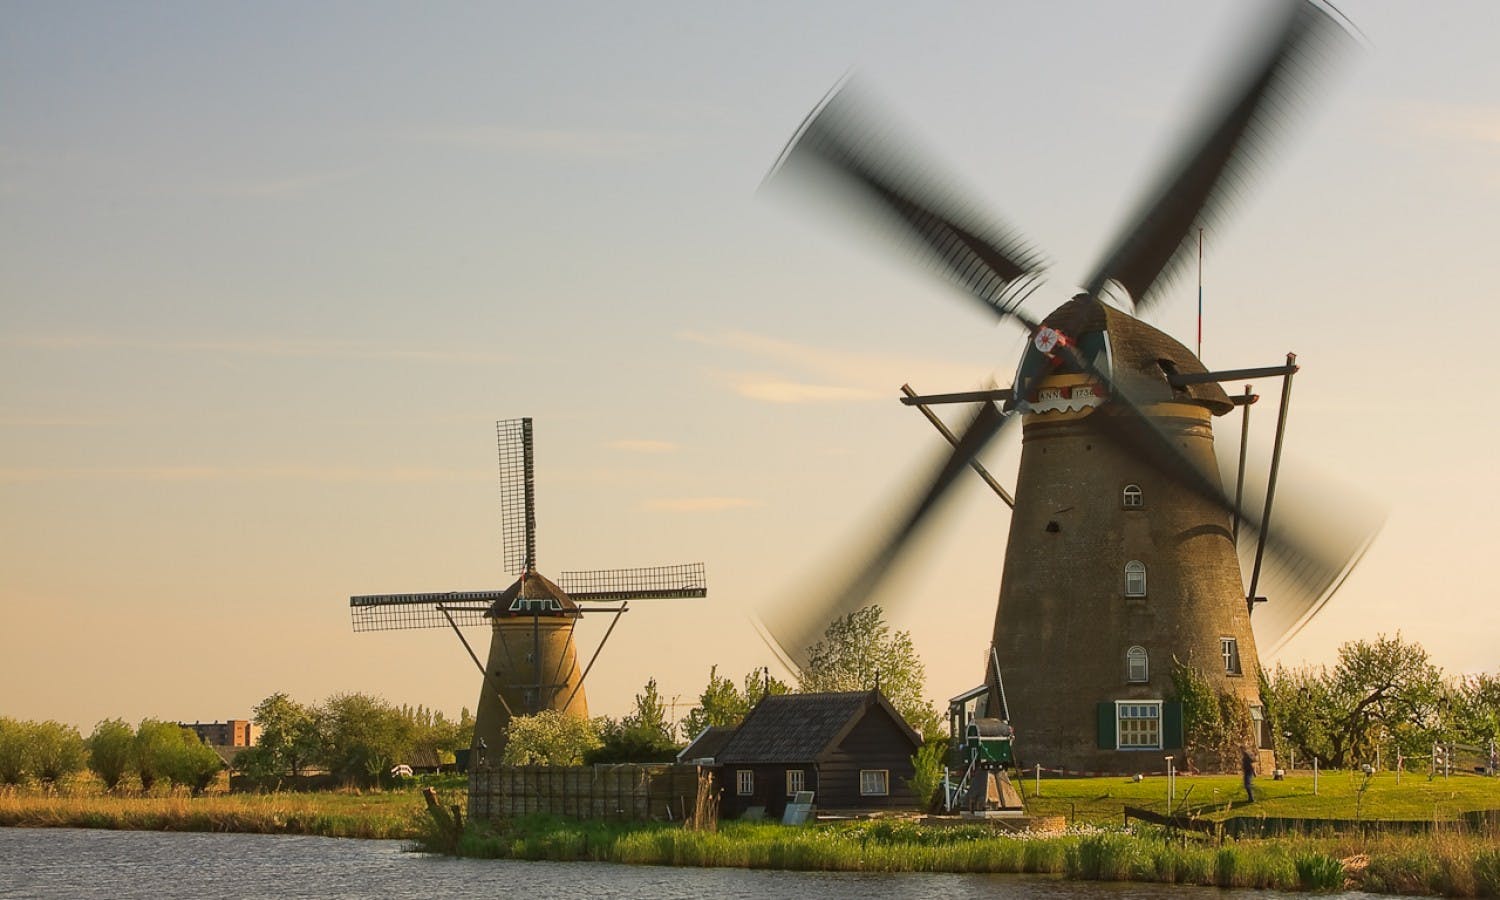 Tagesausflug in kleiner Gruppe zu den Windmühlen von Kinderdijk und nach Den Haag